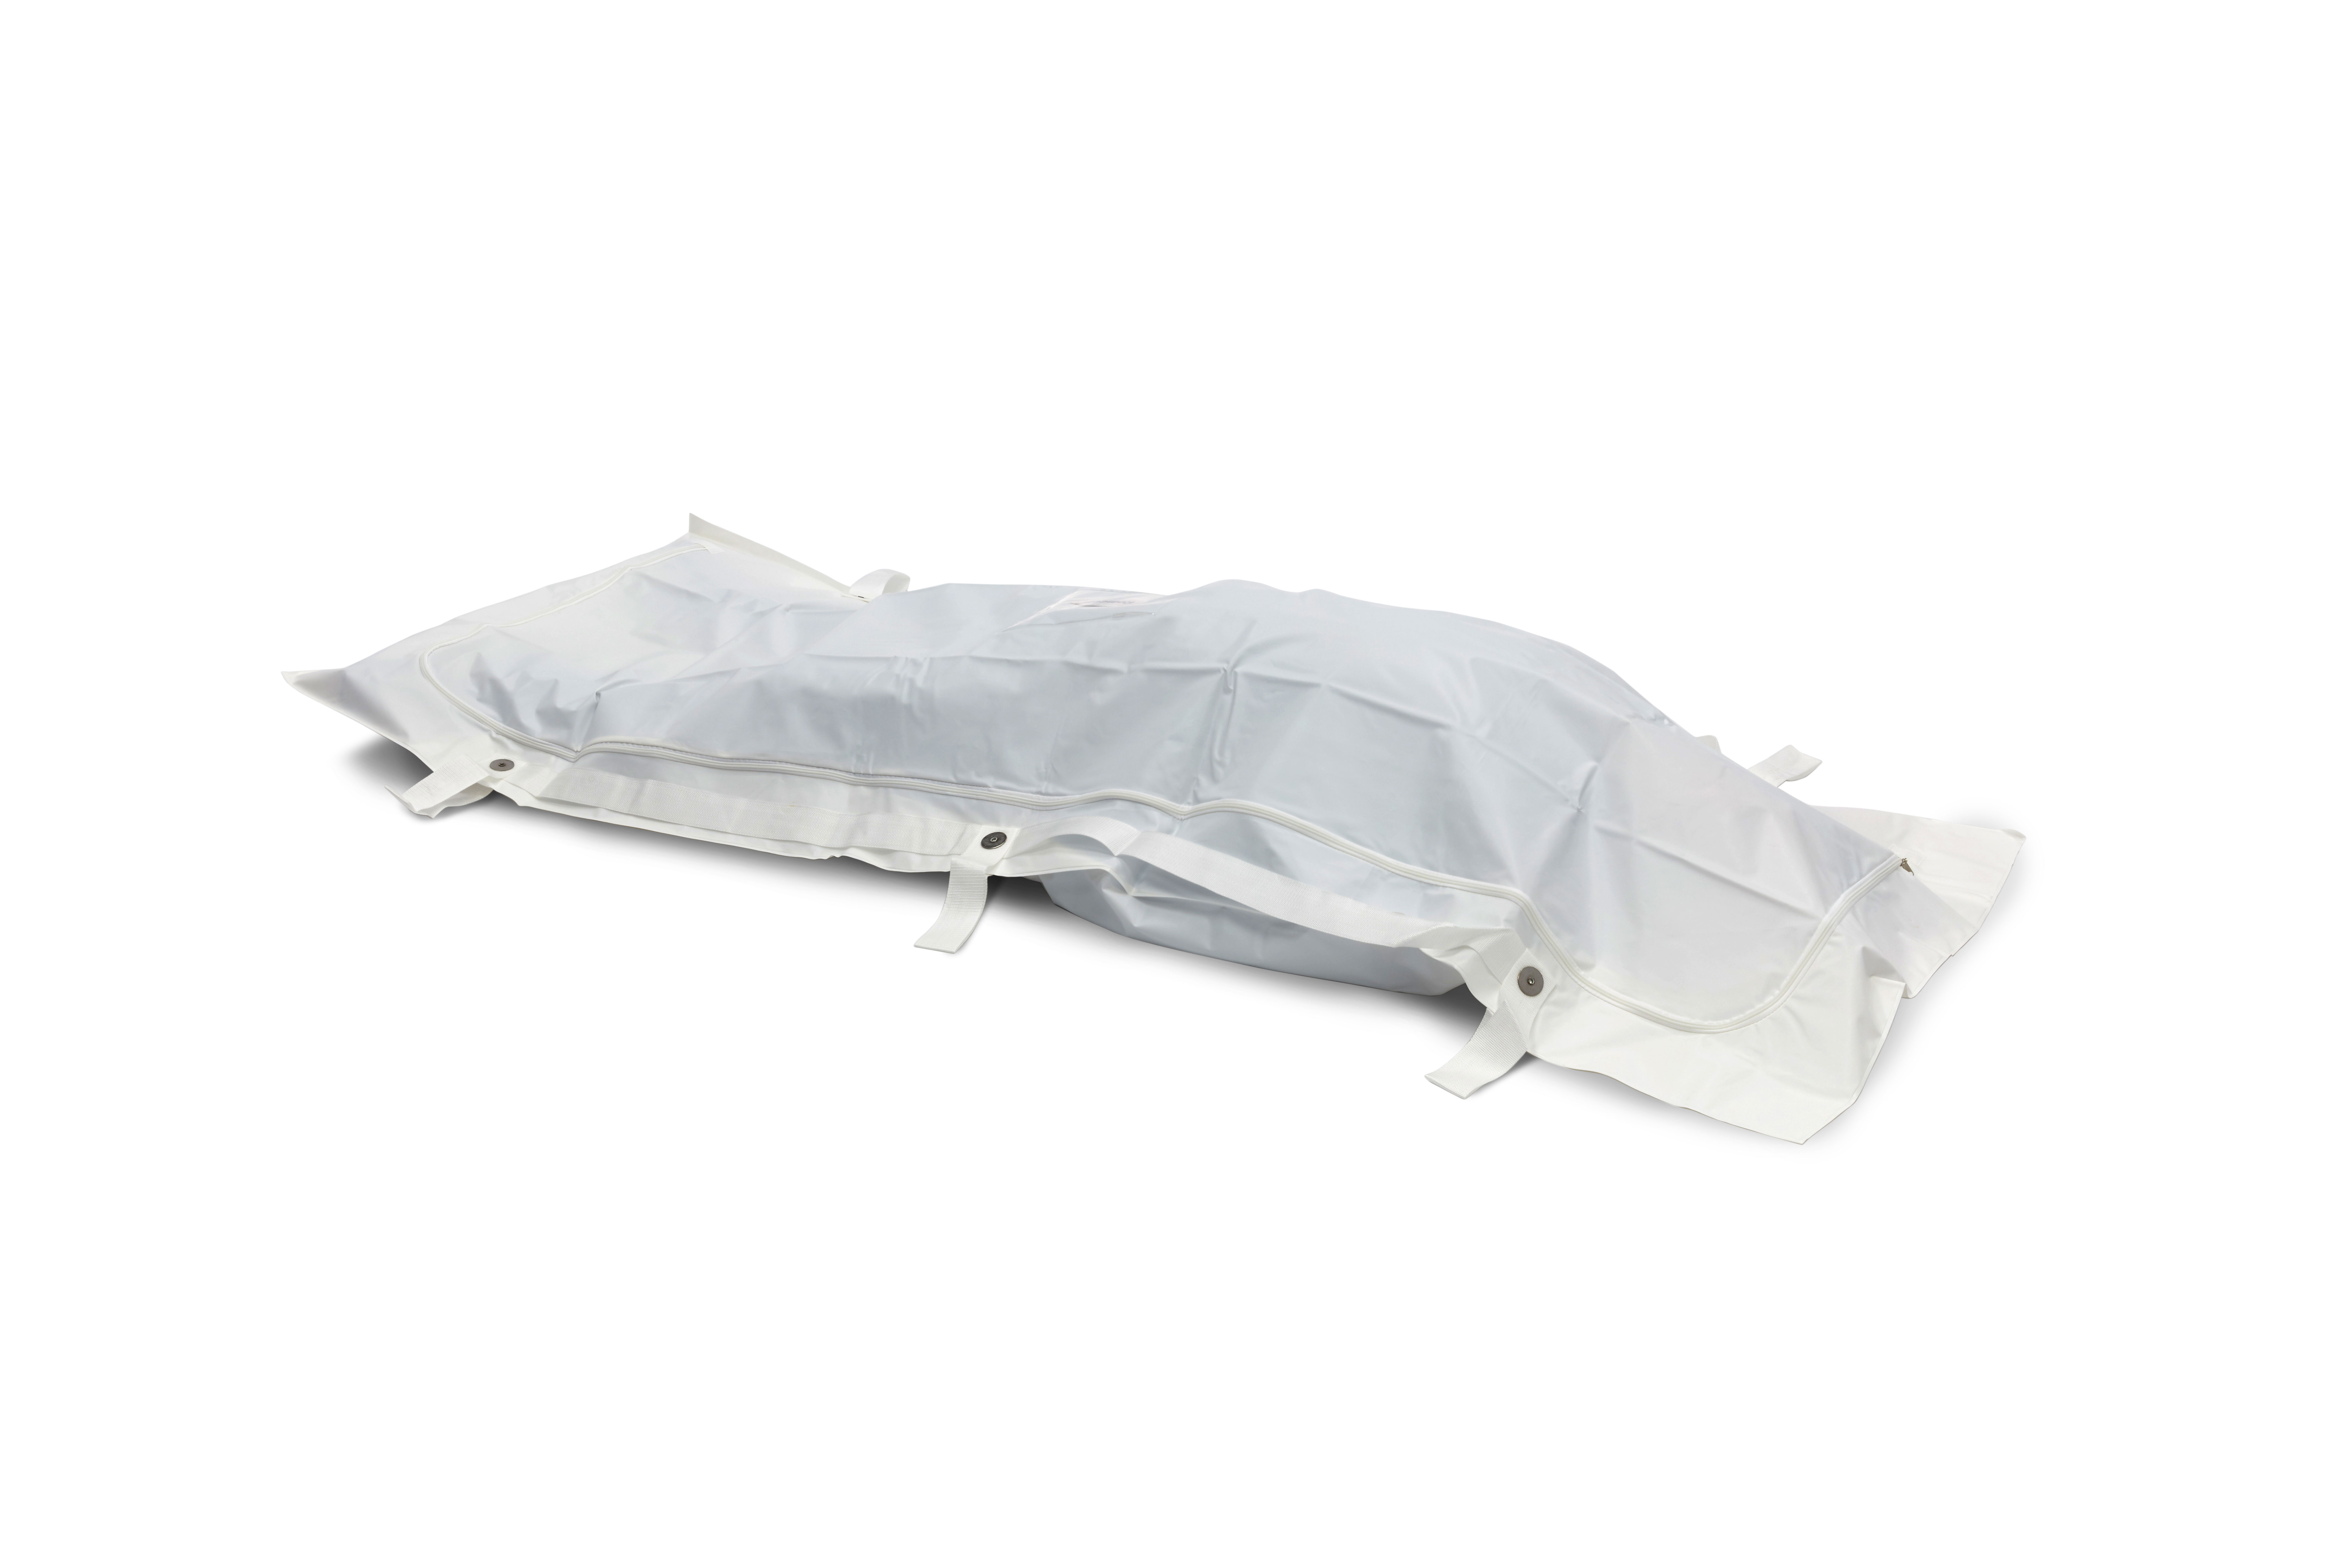 BODYBAGS Romed PEVA Body bags / Leichensäcke, weiß, 6 Handgriffe, 90 x 230 cm pro Stück in einem Beutel, 20 Stück im Karton.